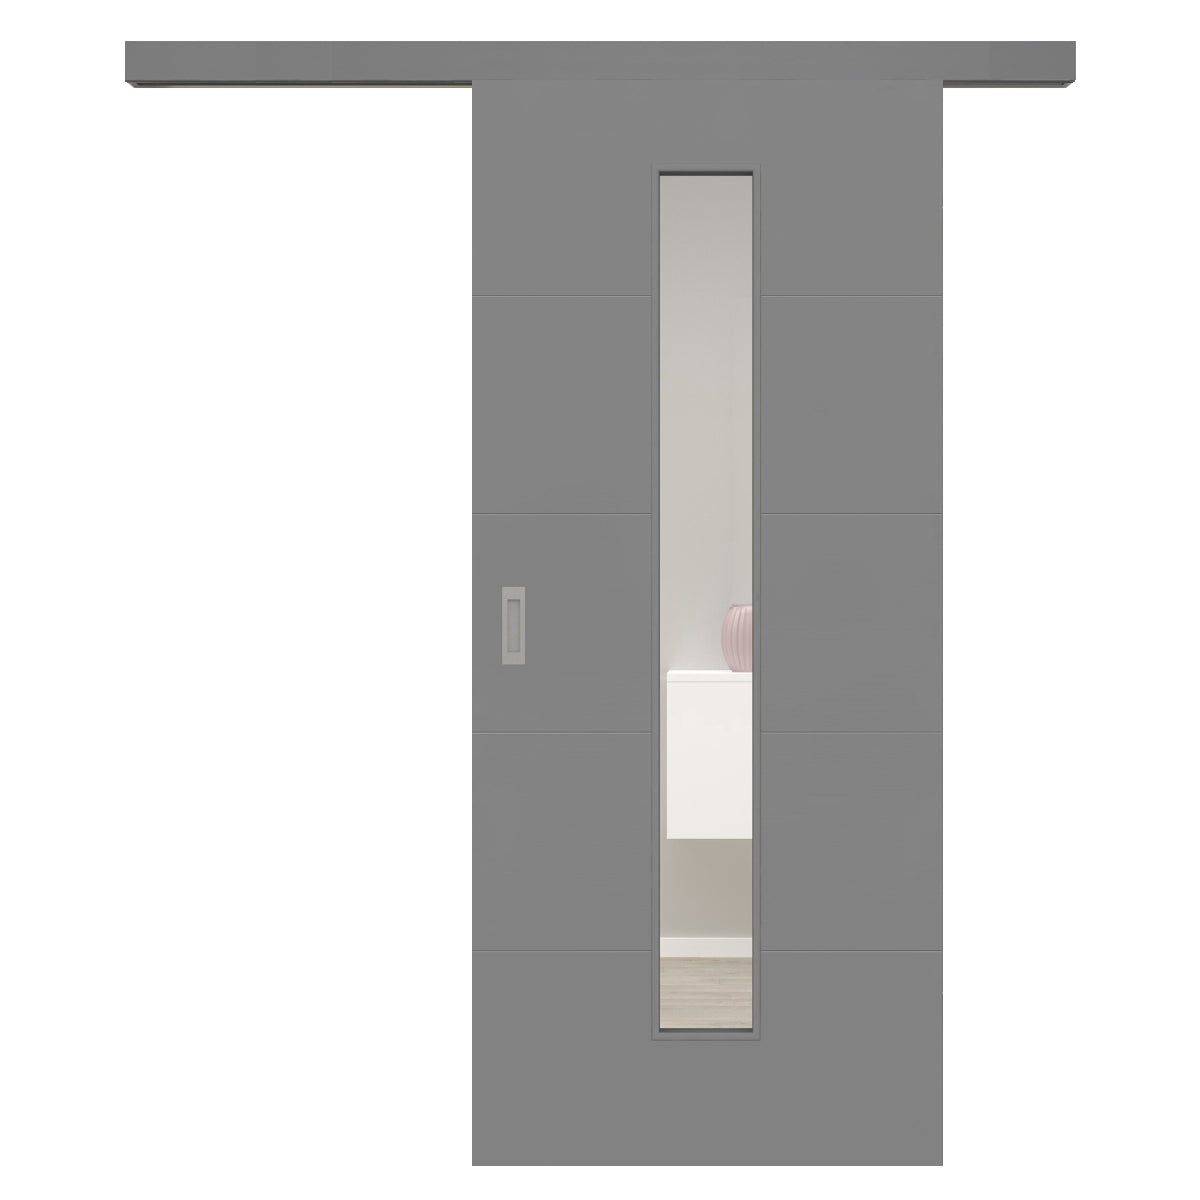 Schiebetür für Set mit grauem Laufkasten mit Lichtausschnitt grau 4 Rillen quer - Modell Designtür Q47LAM